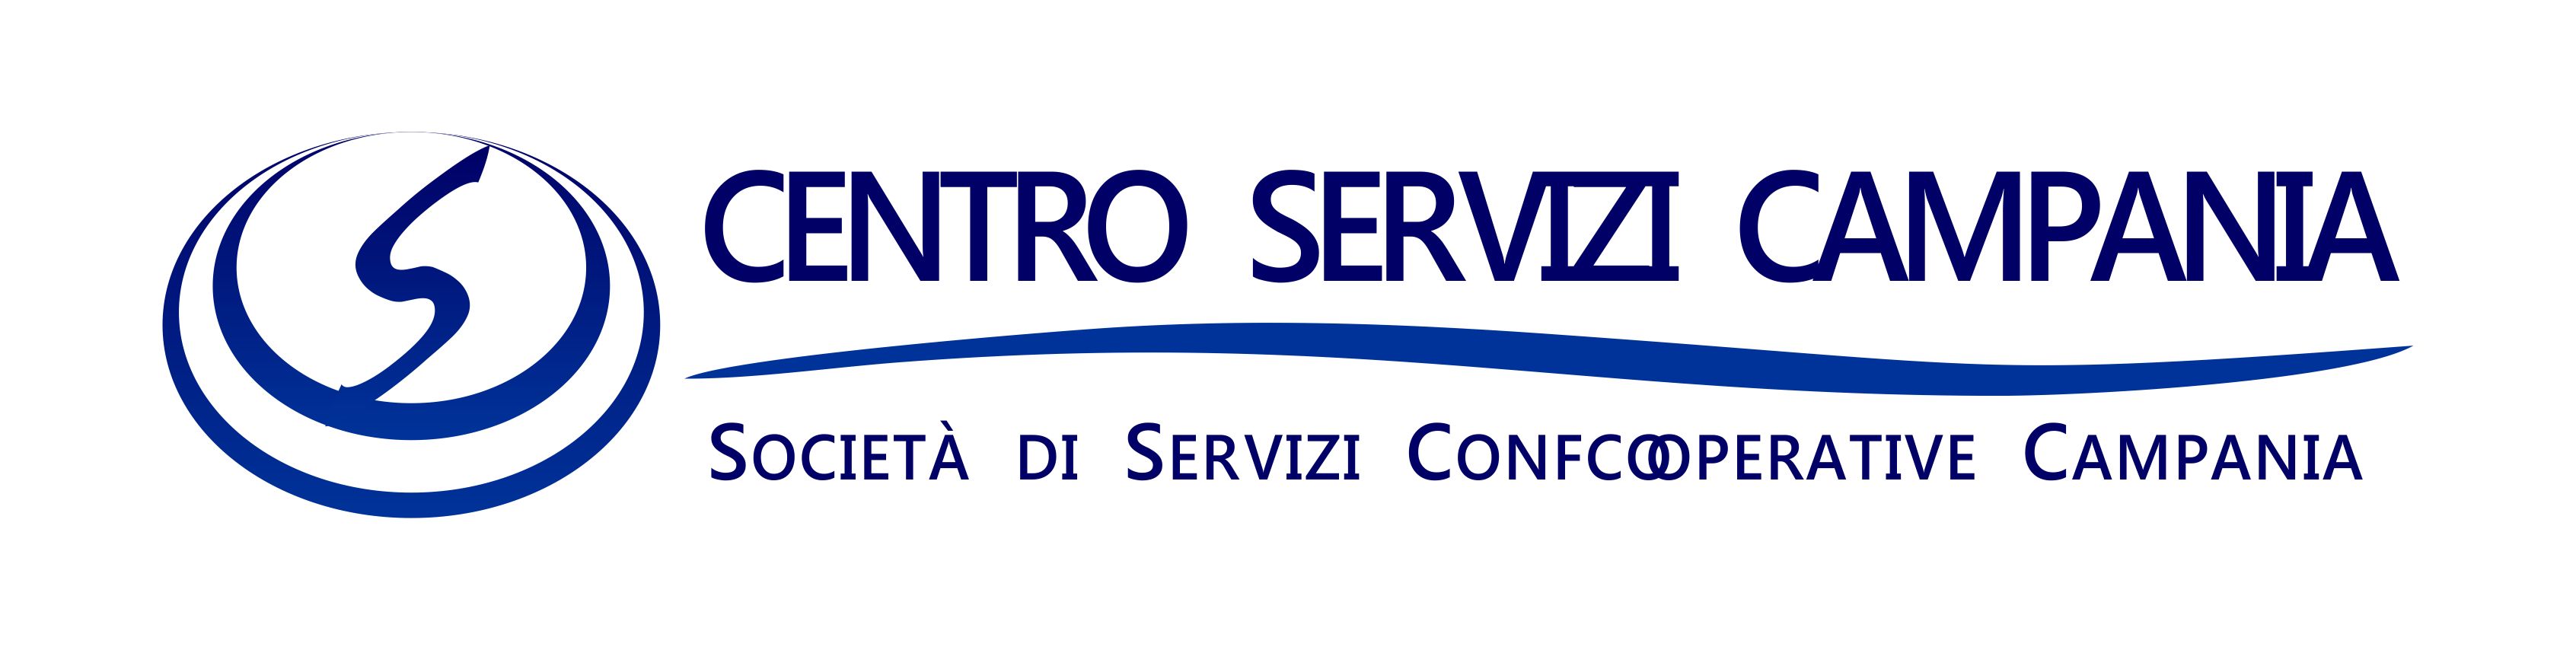 Centro Servizi Campania: servizi per cooperative e soci a costo zero